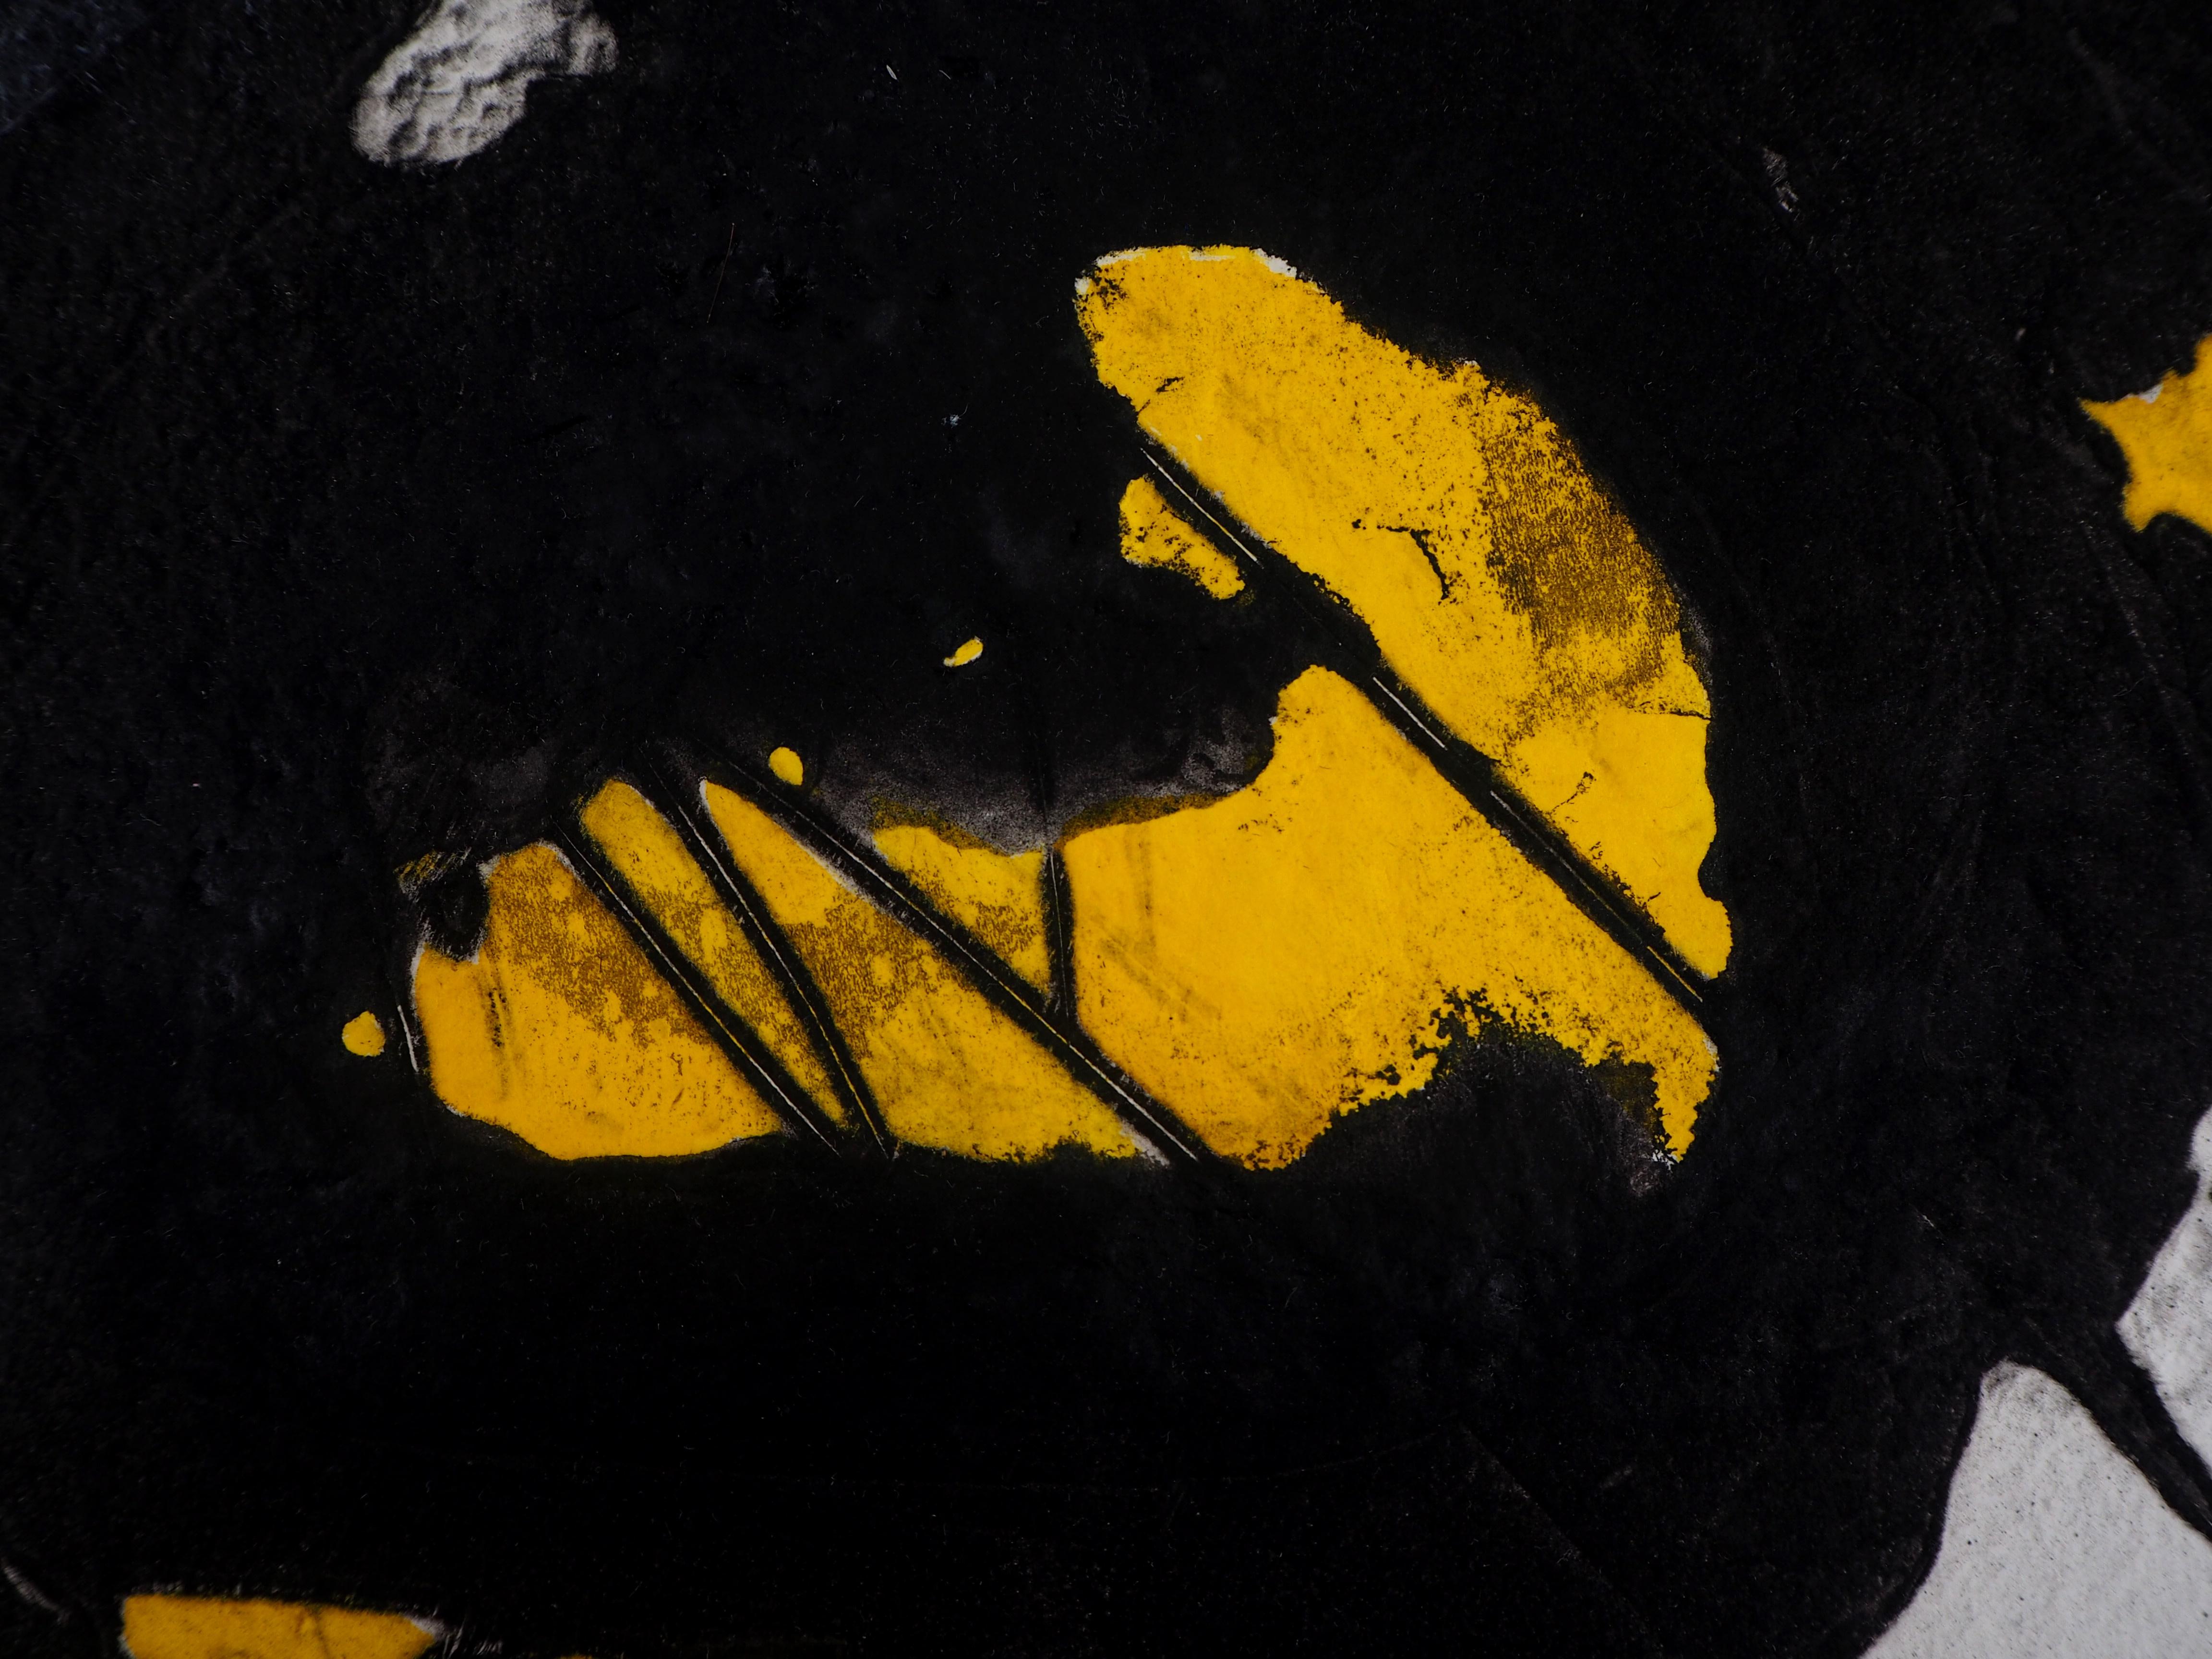 LIONEL (Lionel PEROTTE, sagte)
Abstrakte Komposition mit Gelb und Schwarz

Original-Carborundum-Radierung, vom Künstler mit handgemalten Akzenten versehen 
Handsigniert mit Bleistift
Nummeriert /20
Auf Pergament 46,5 x 58 cm (ca. 18,1 x 22,8